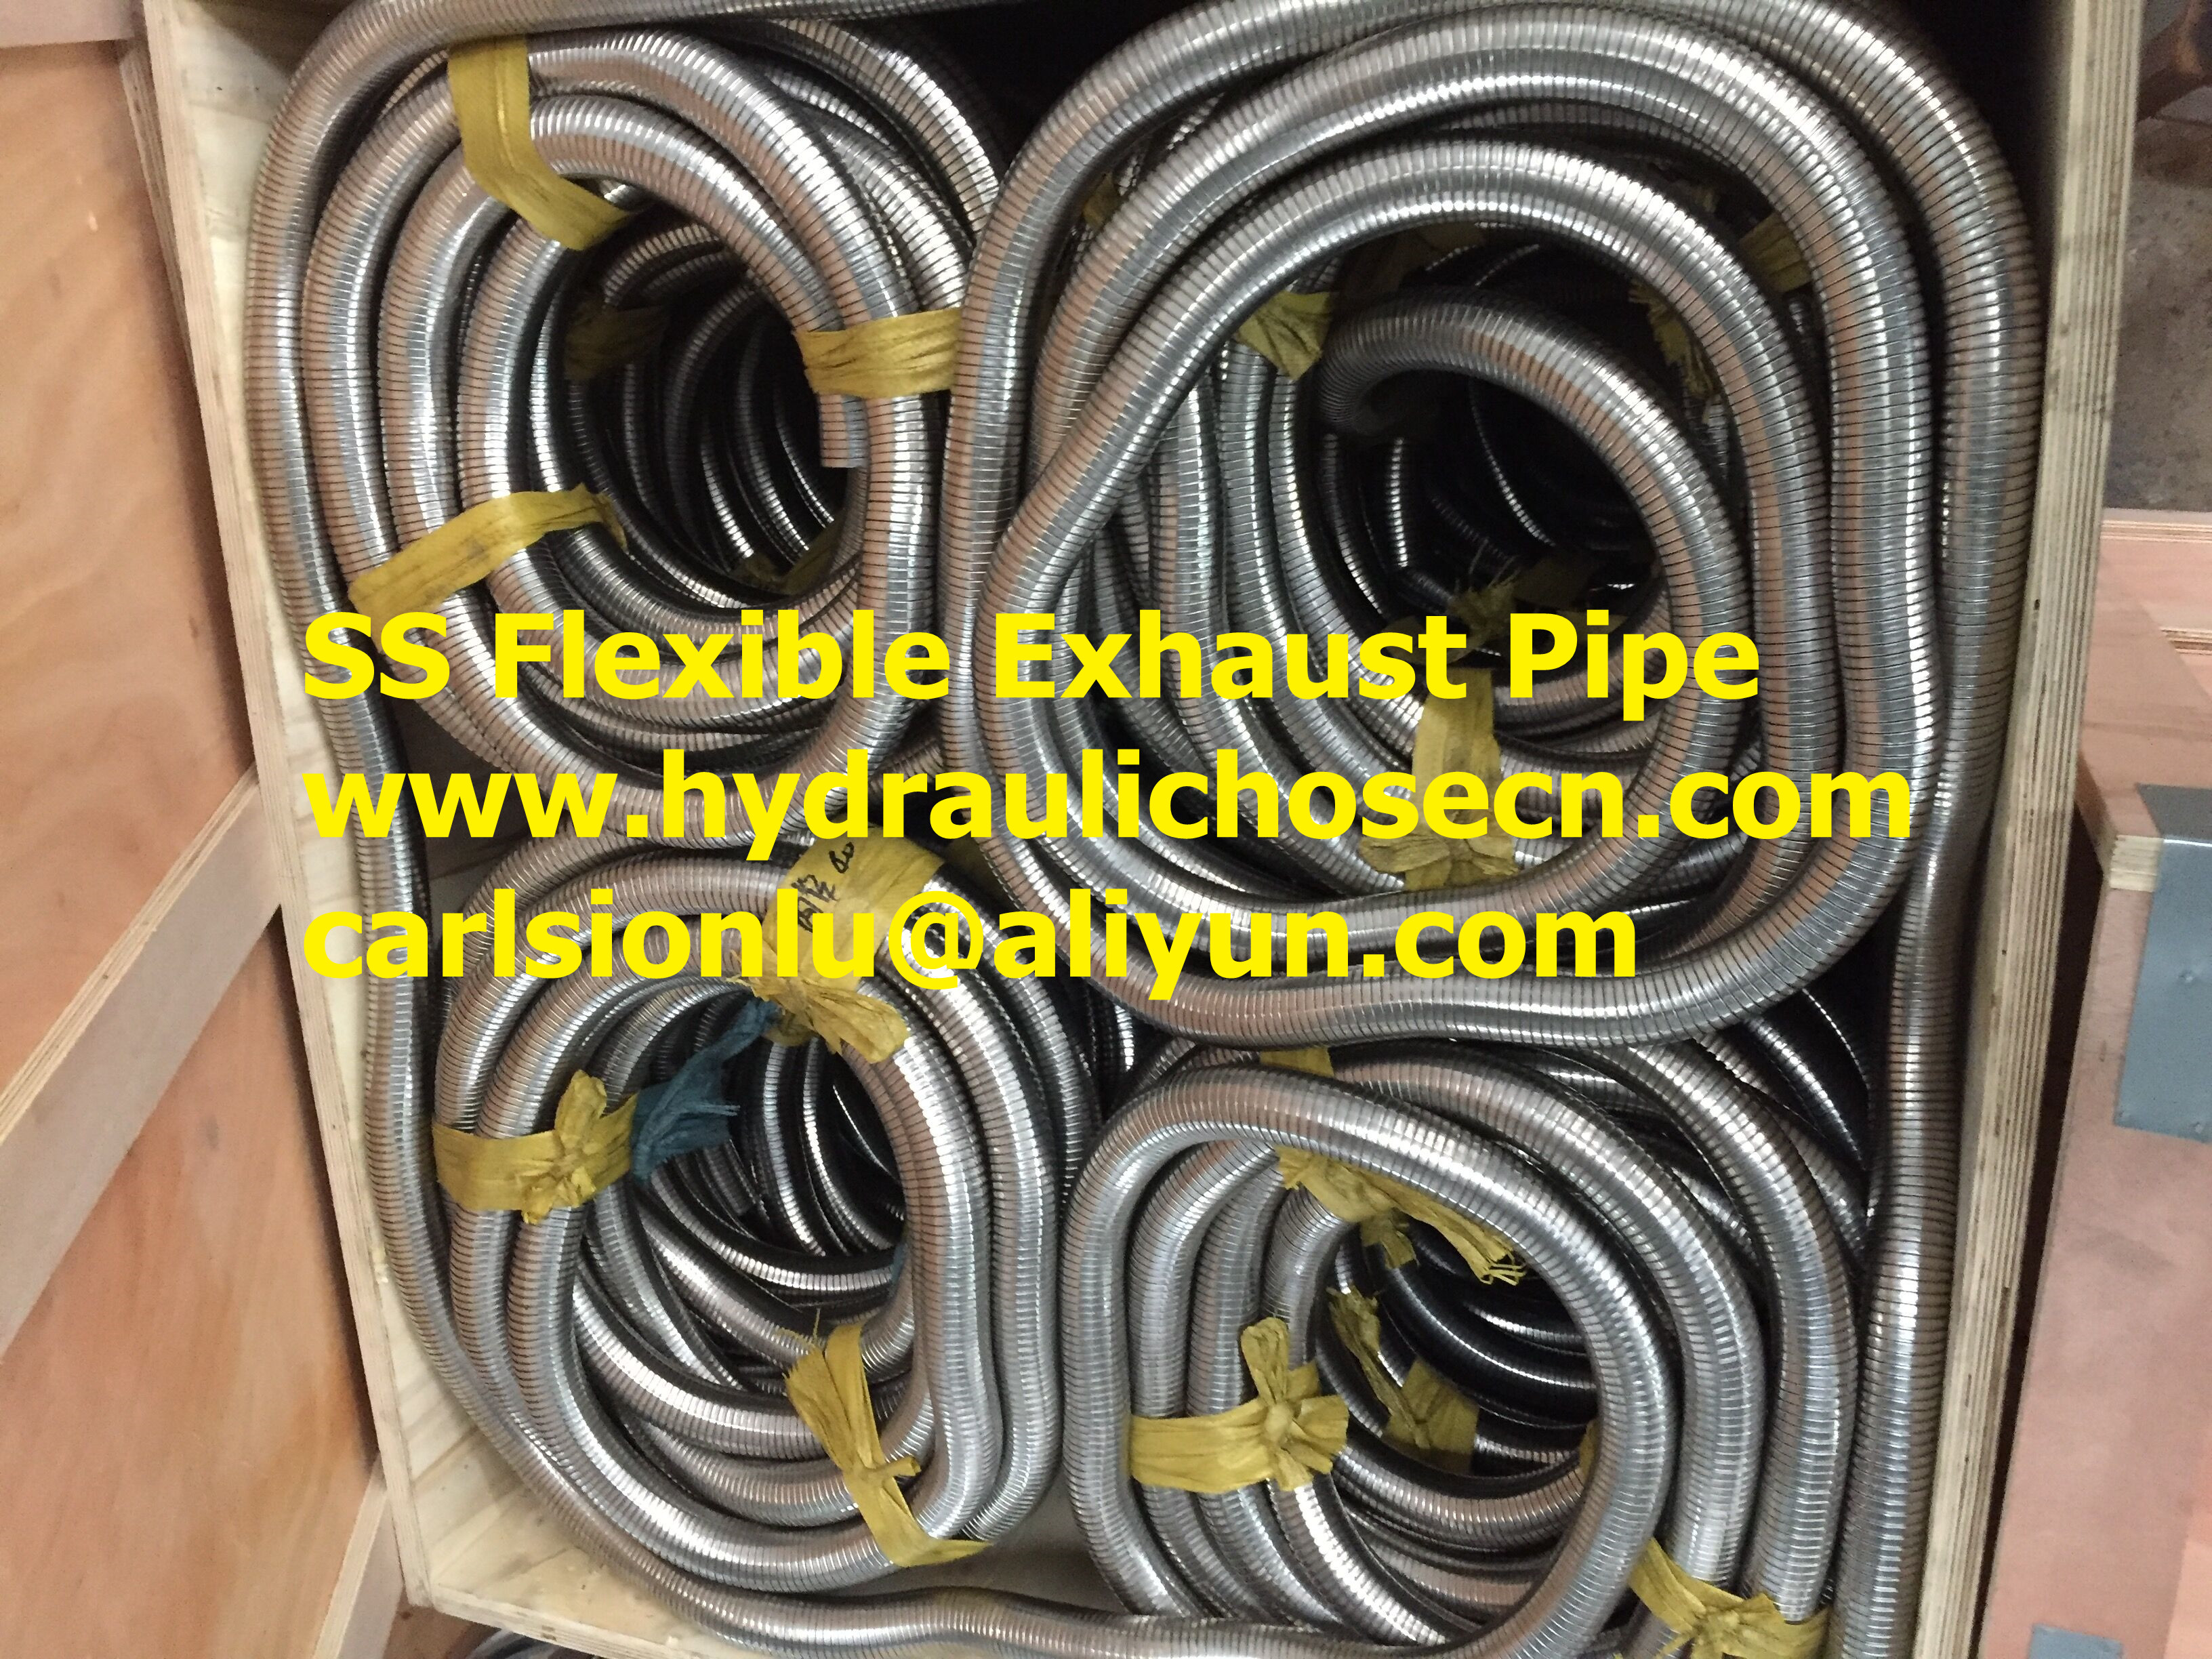 Exhaust flexible pipe / Truck Exhaust Flexible Pipe / Flexible Exhaust